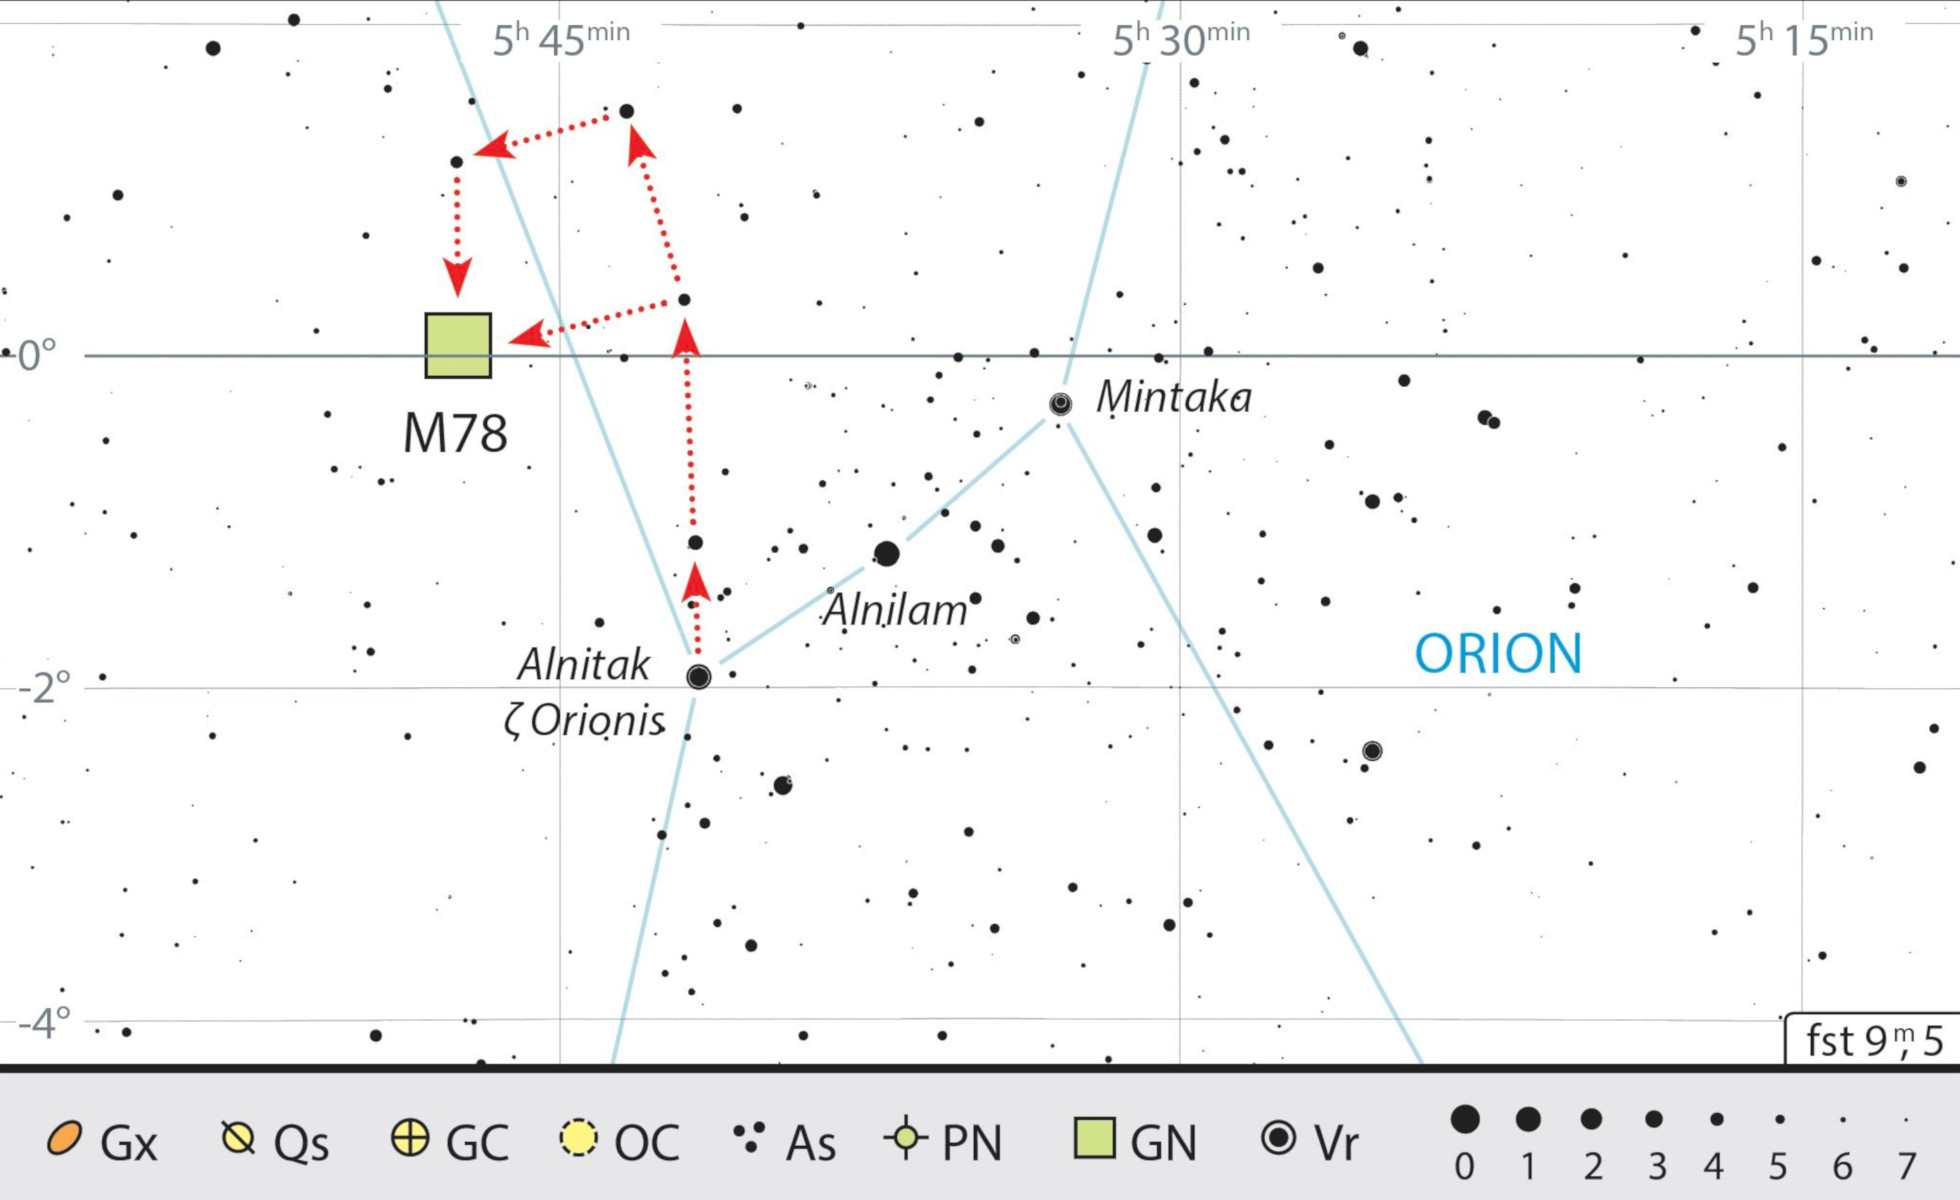 Mapa starhoppingu do M78 w Orionie. J. Scholten